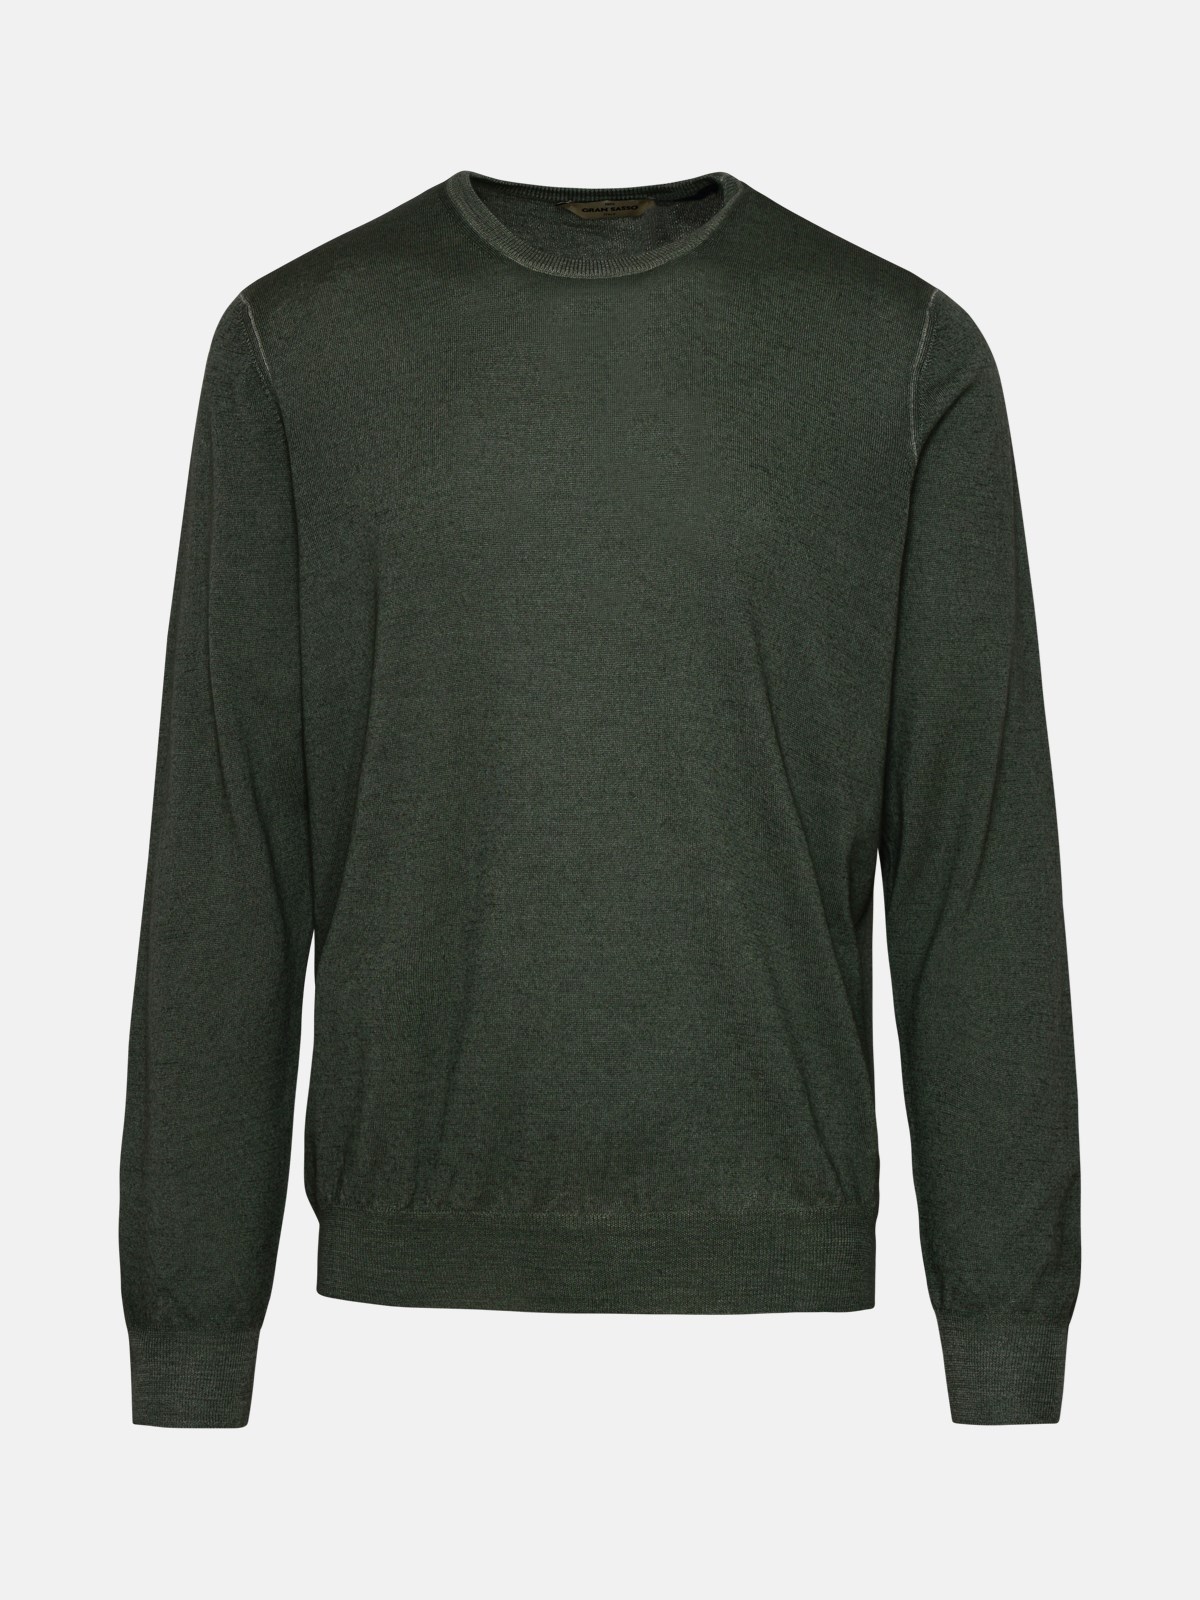 Gran Sasso Green Wool Sweater